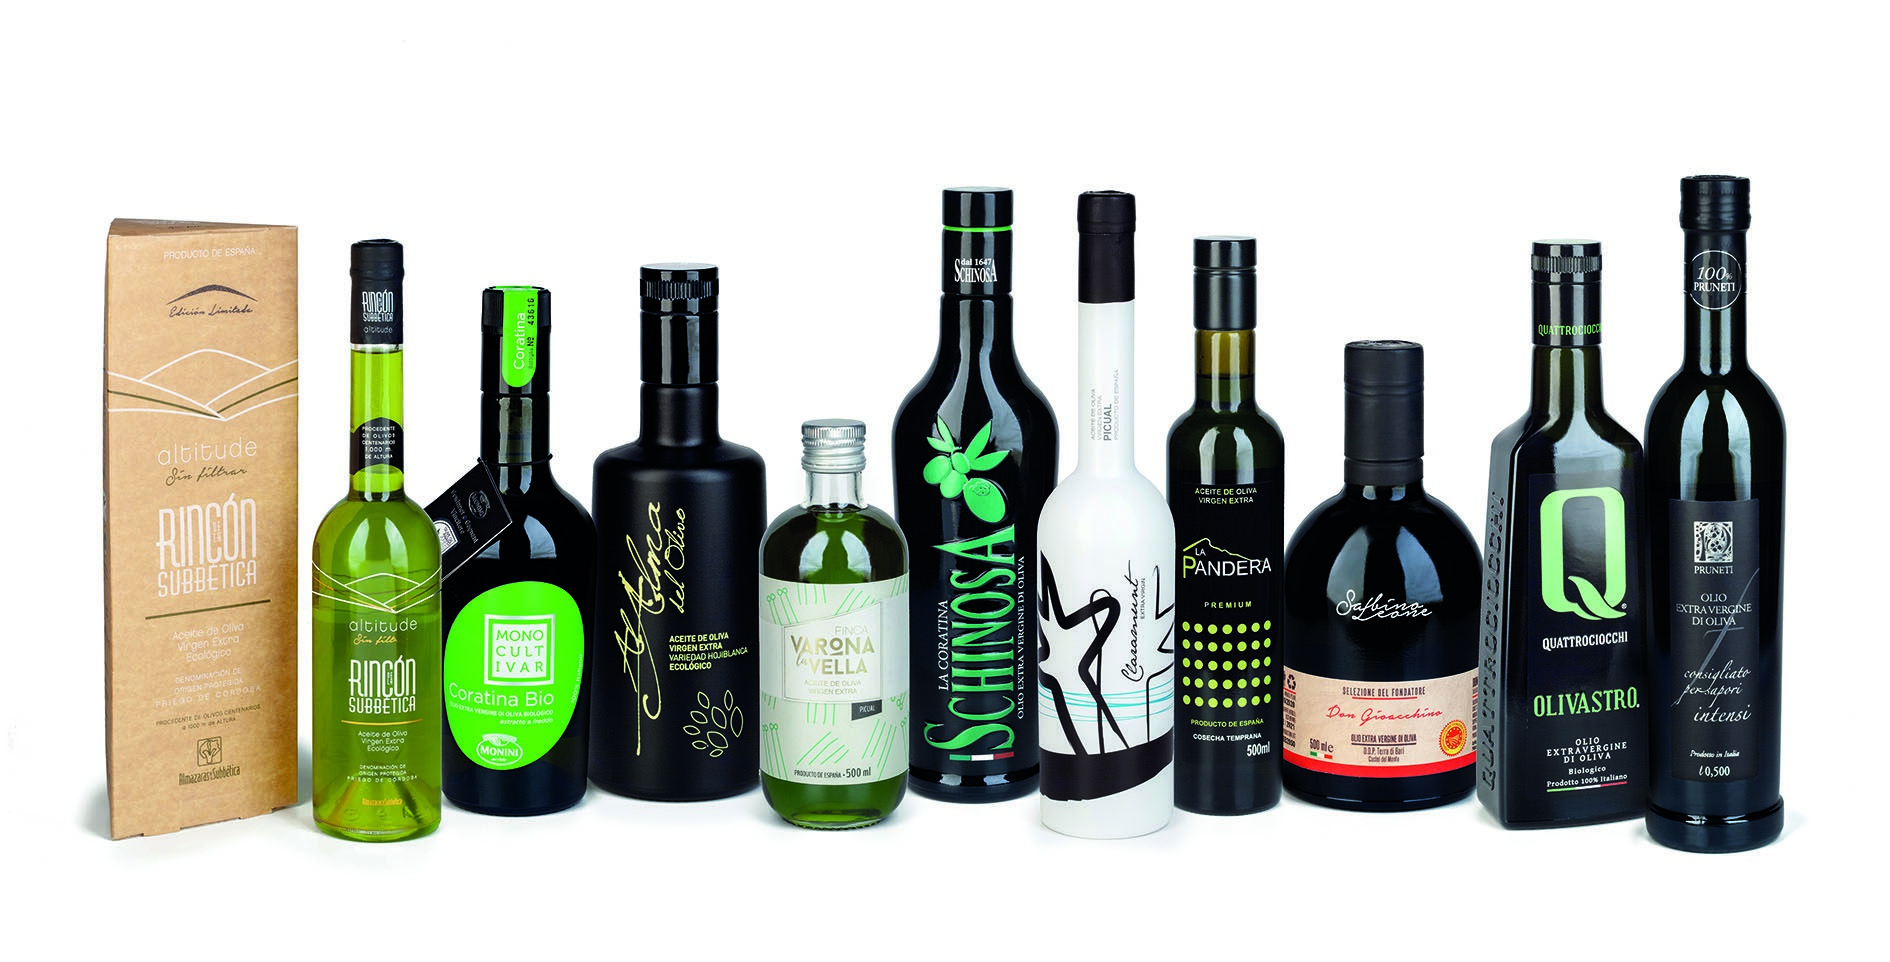 5 aceites de oliva virgen extra españoles, entre los 10 mejores del mundo